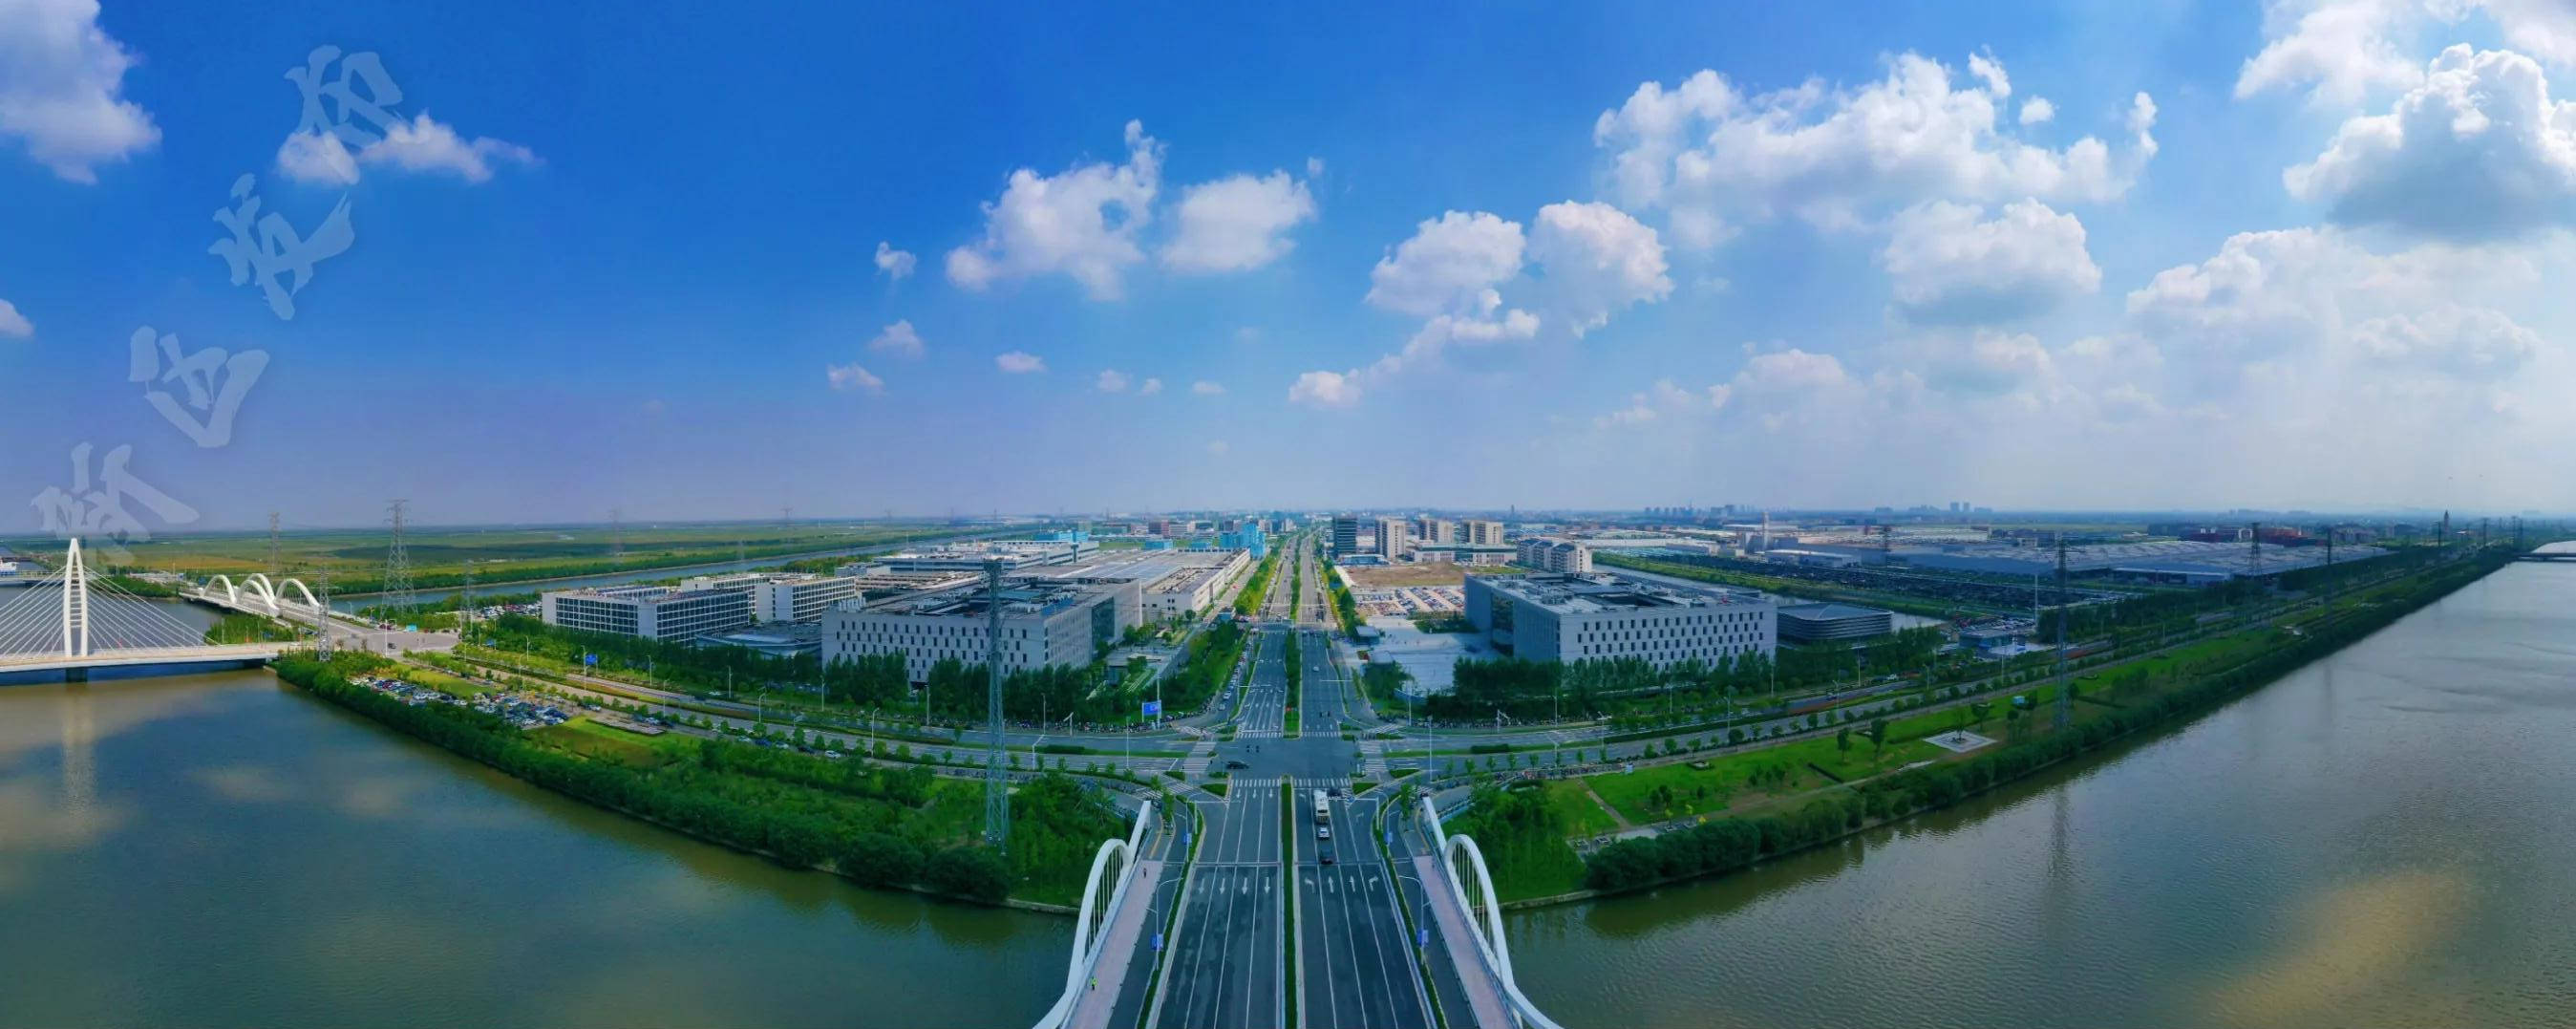 ▏杭州湾新区目前集聚了国内一线优质开发商:卓越,碧桂园,融创,港中旅